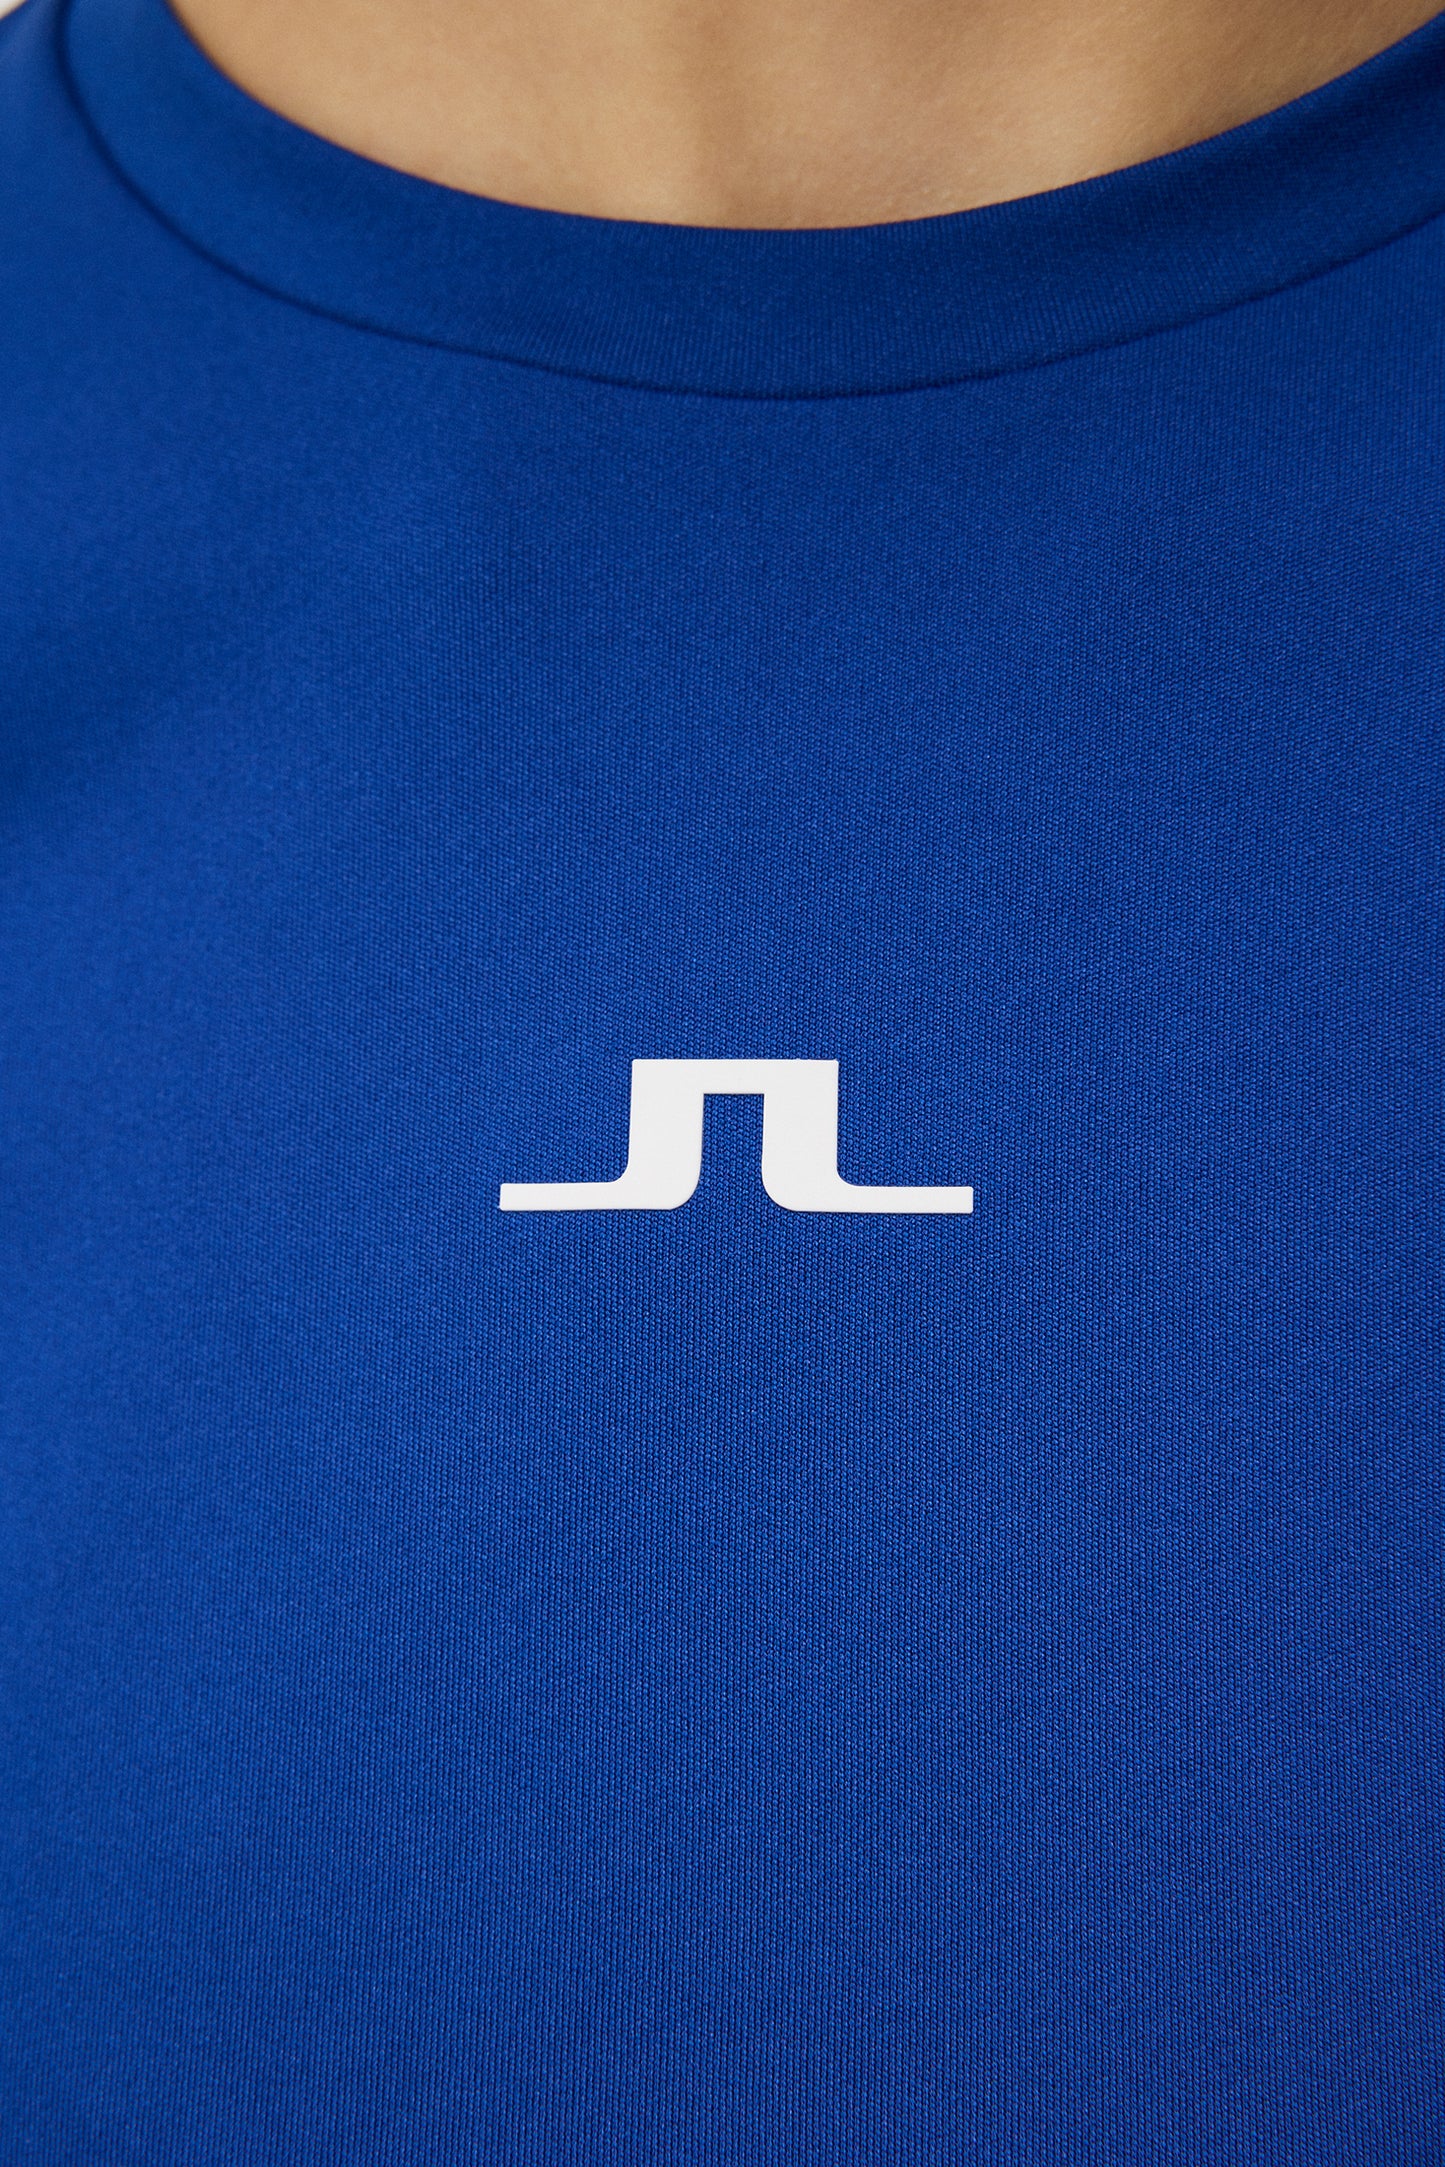 Ada T-shirt / Sodalite Blue